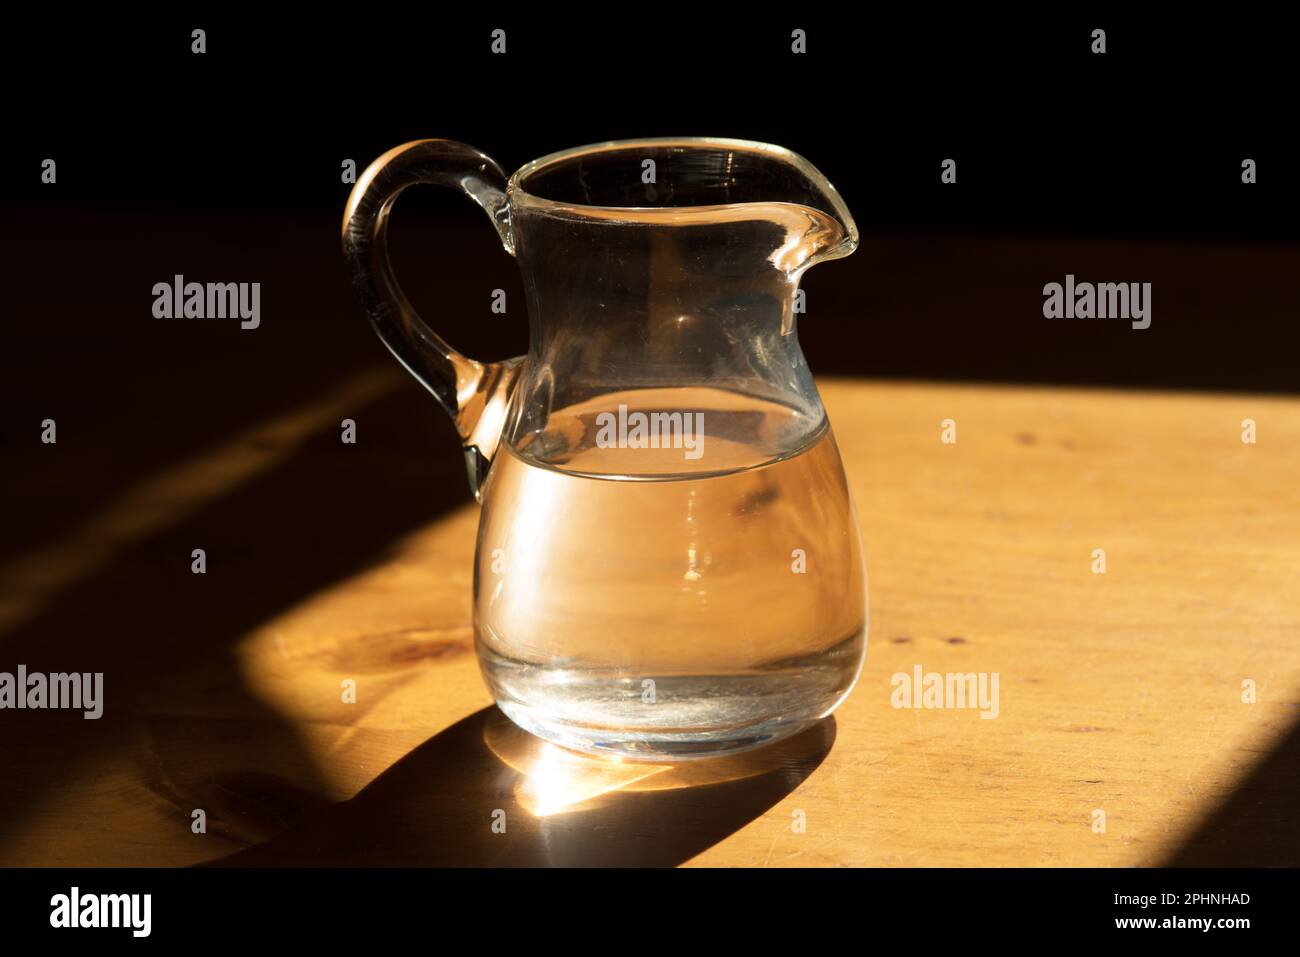 una bella caraffa in vetro con dell'acqua su un tavolo in legno Stock Photo